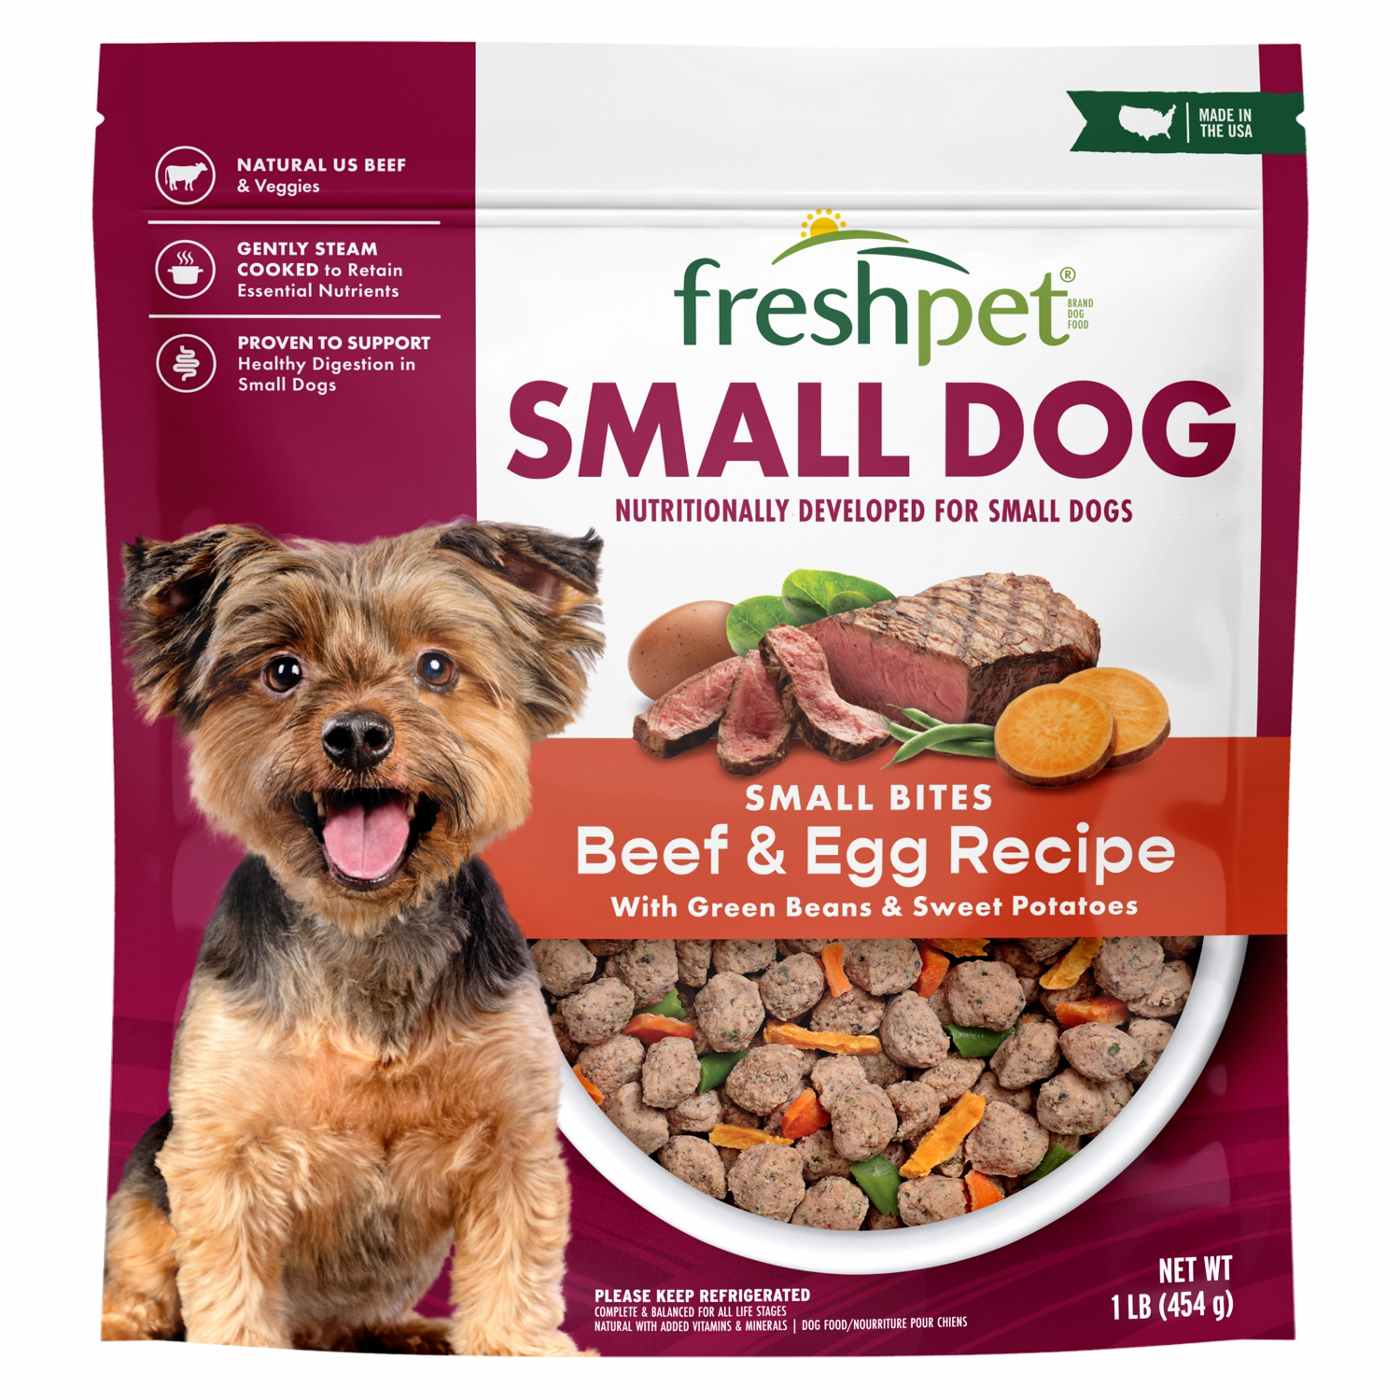 Freshpet Small Dog Bite Size Beef & Egg Fresh Dog Food; image 1 of 9